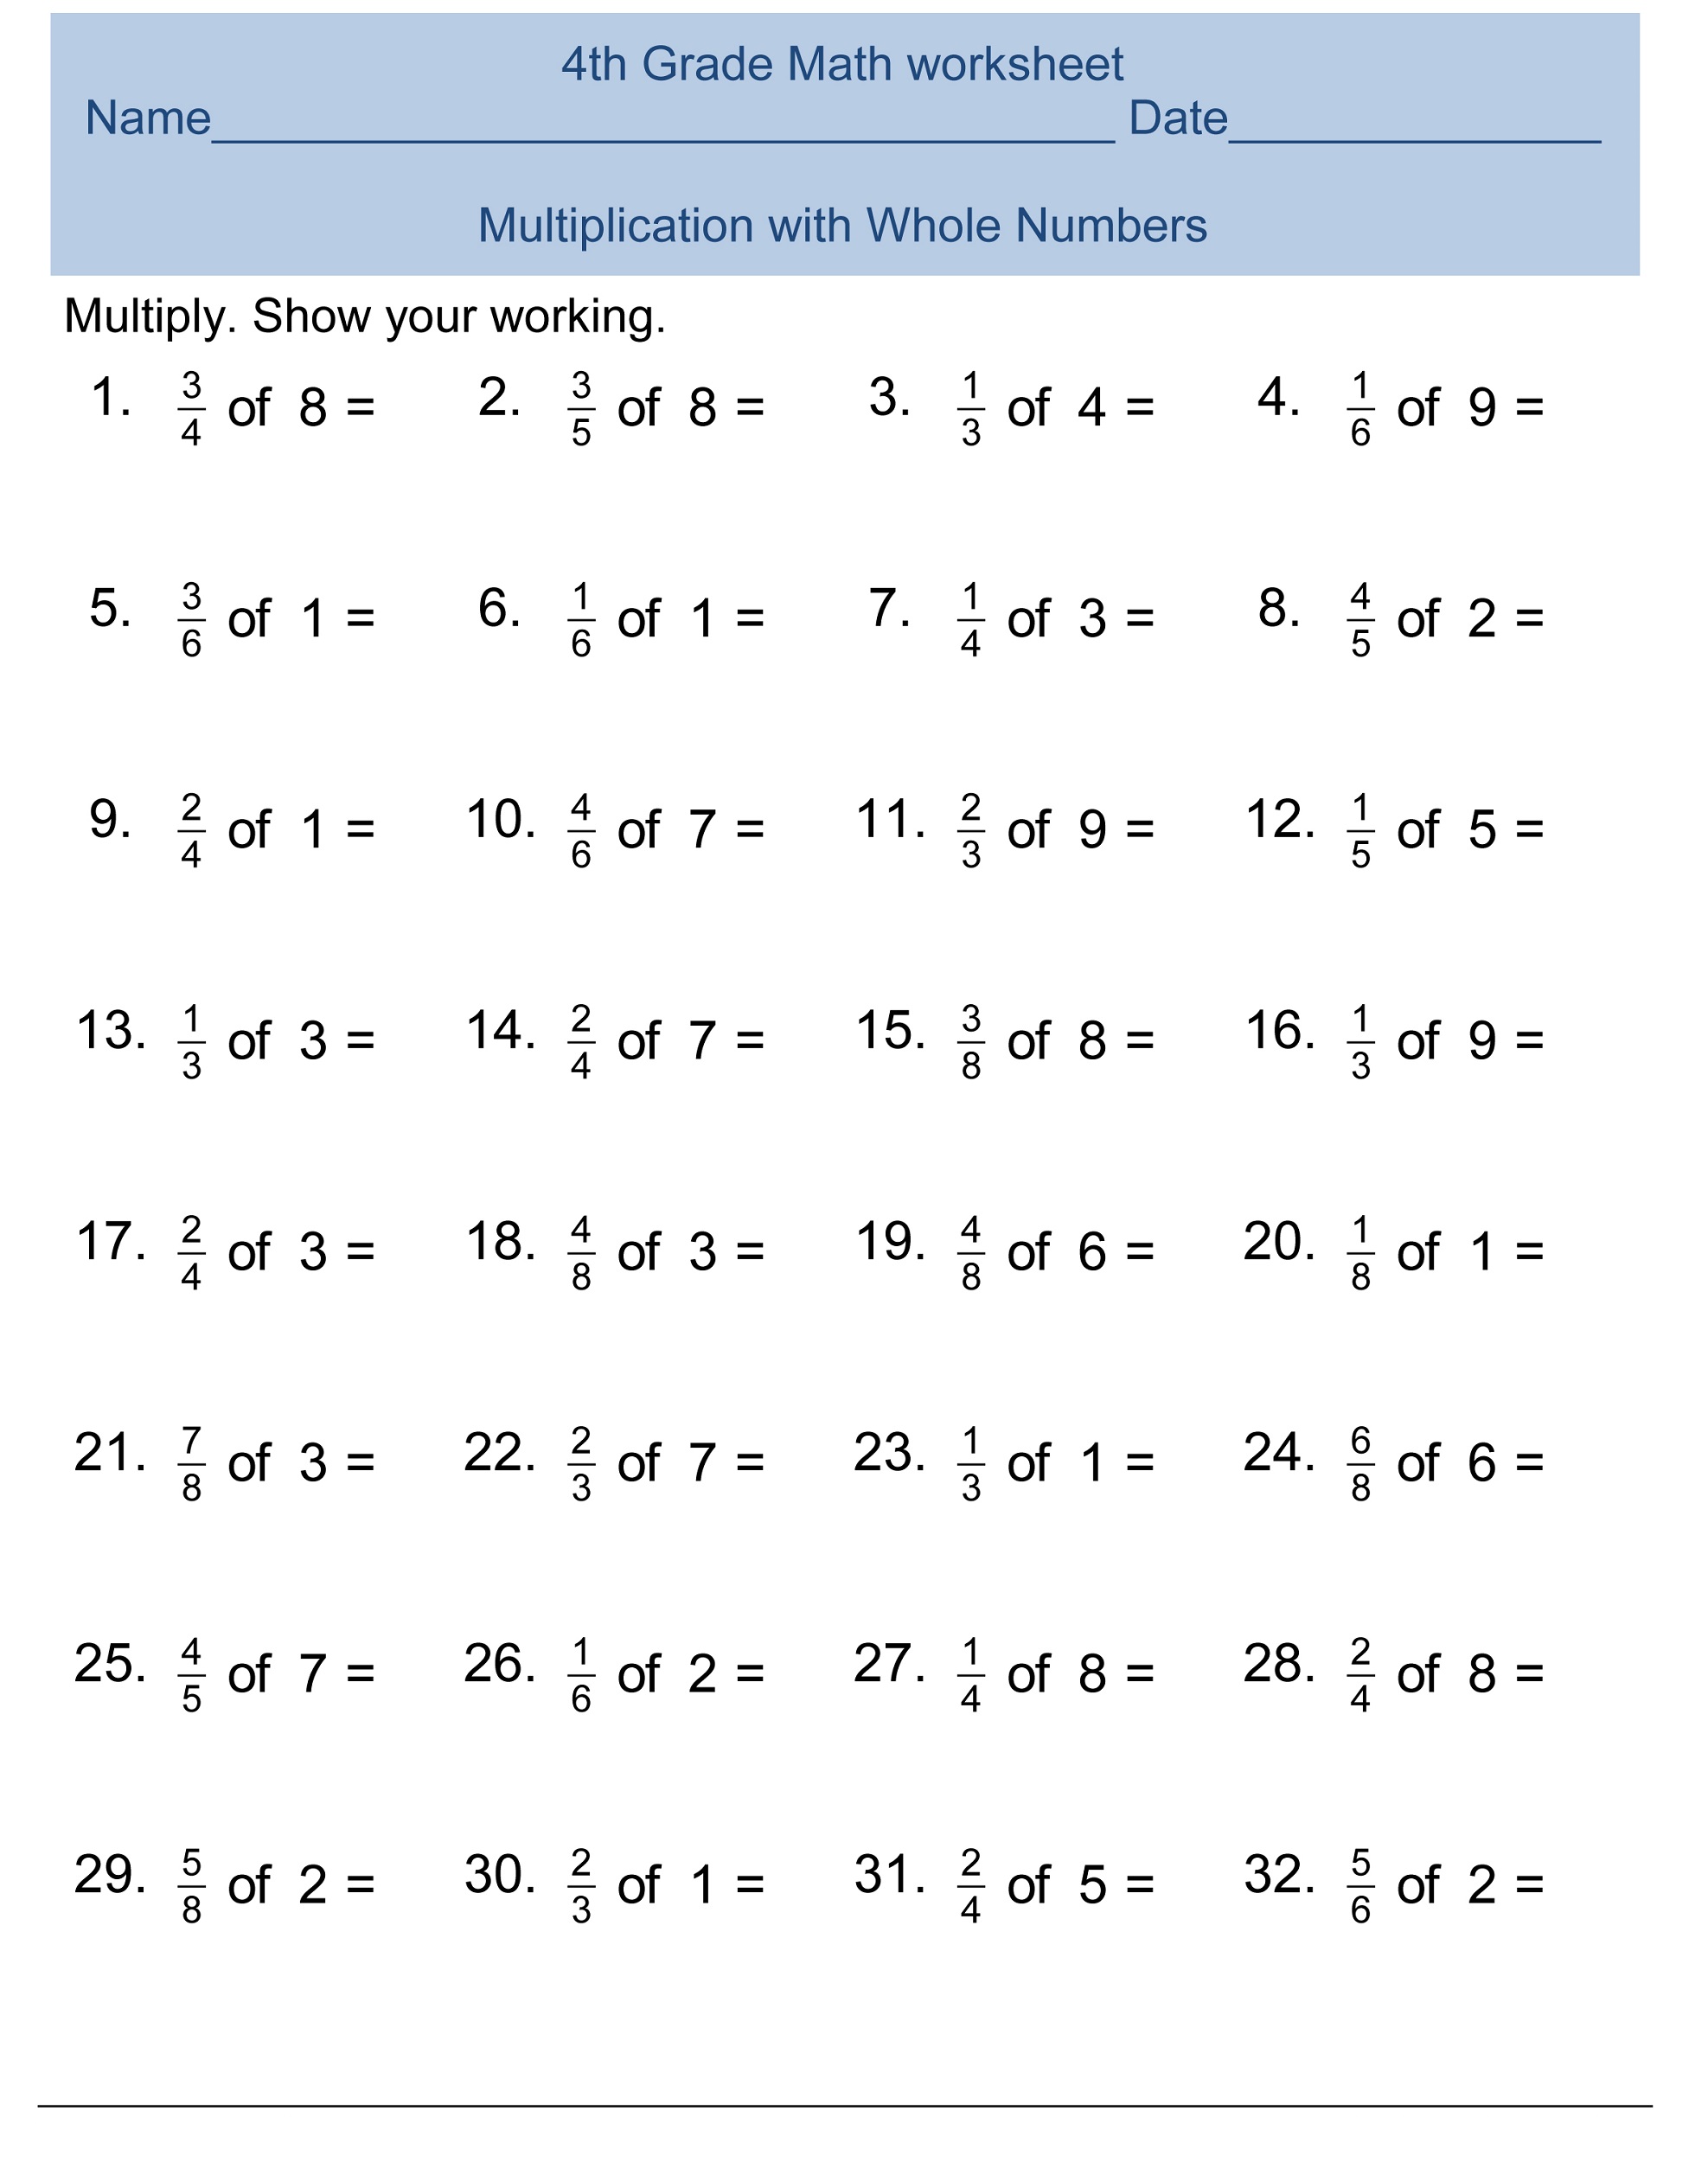 4th Grade Multiplication Worksheets Texas